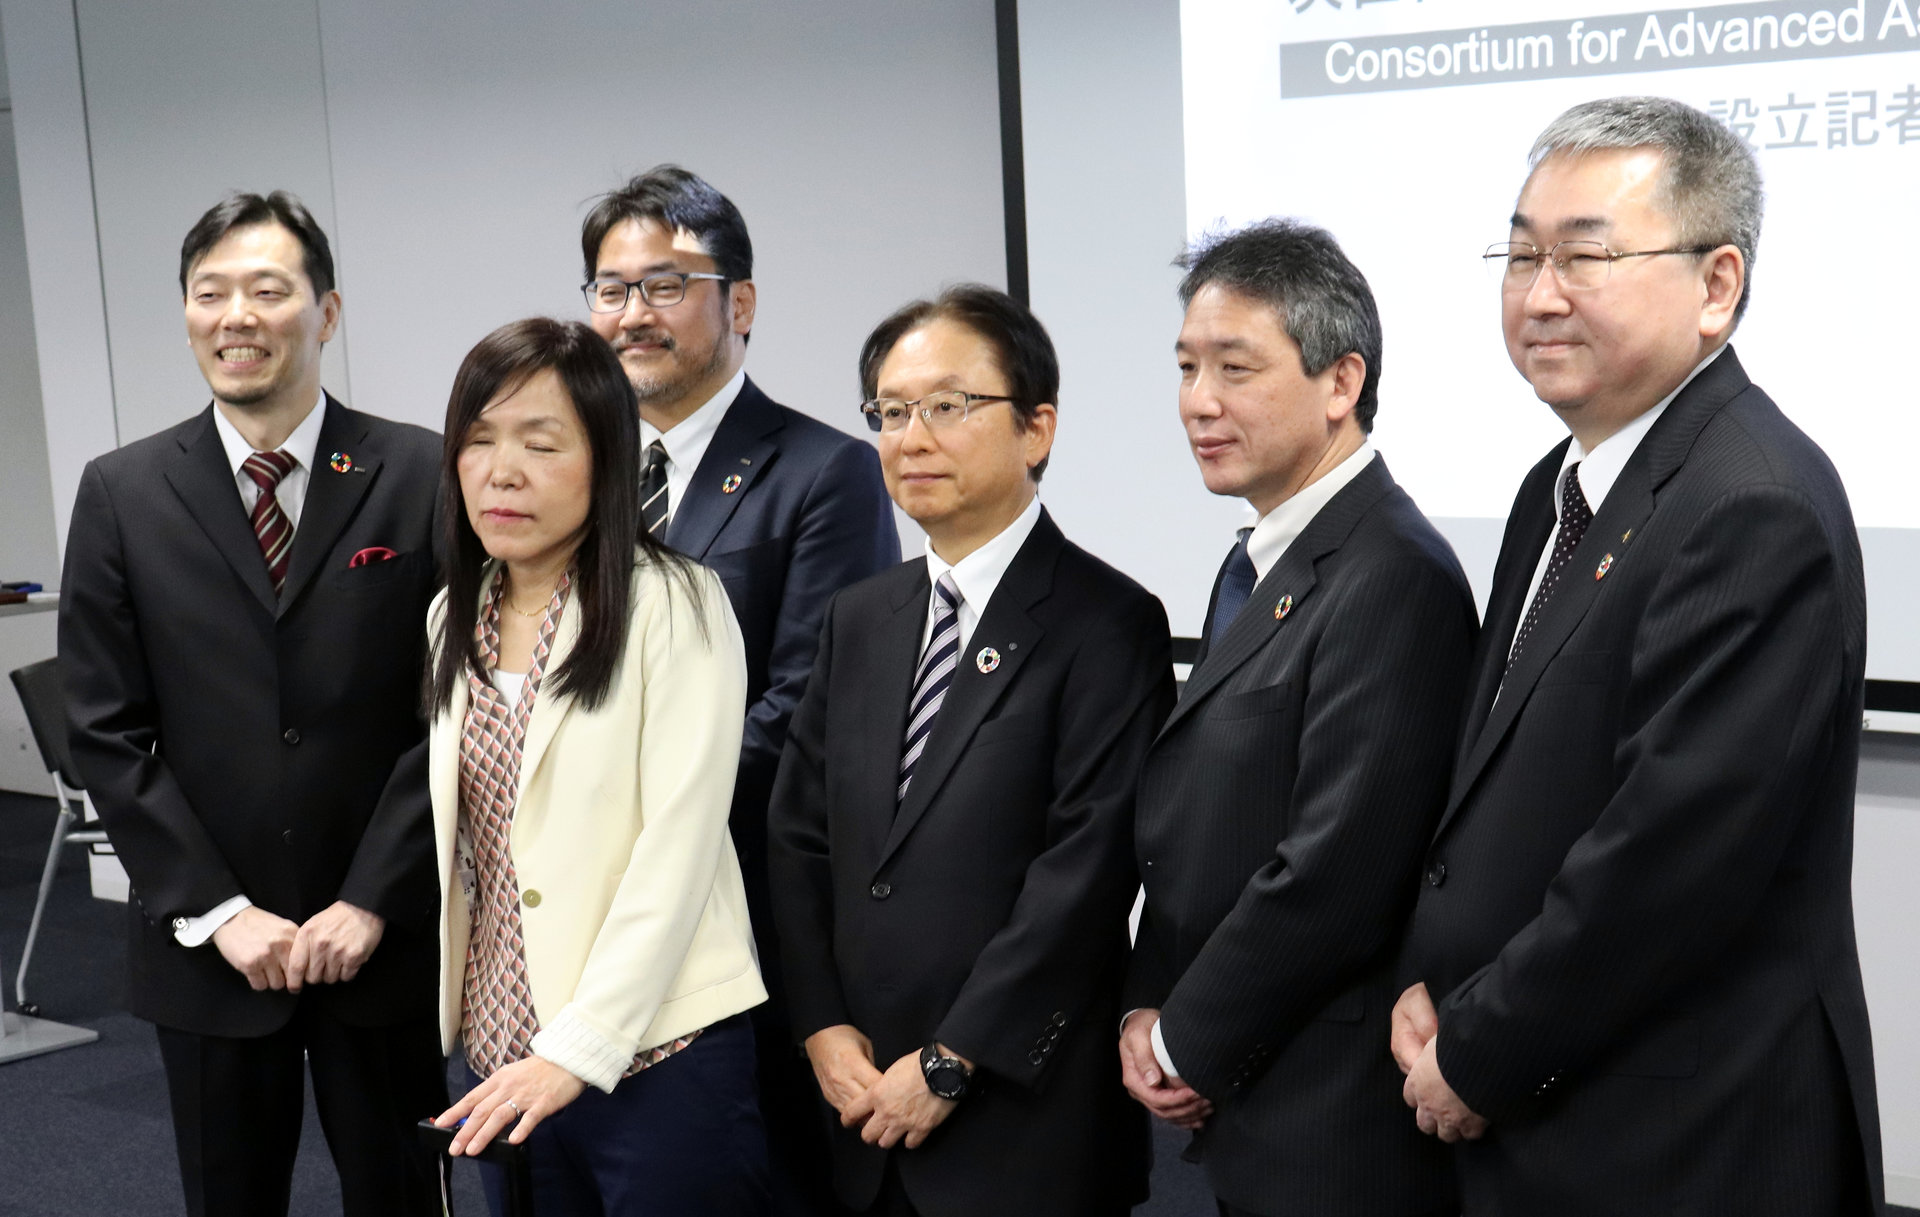 視覚障がい者を支援するAIスーツケースの共同開発を発表、日本IBMなど5社が参加